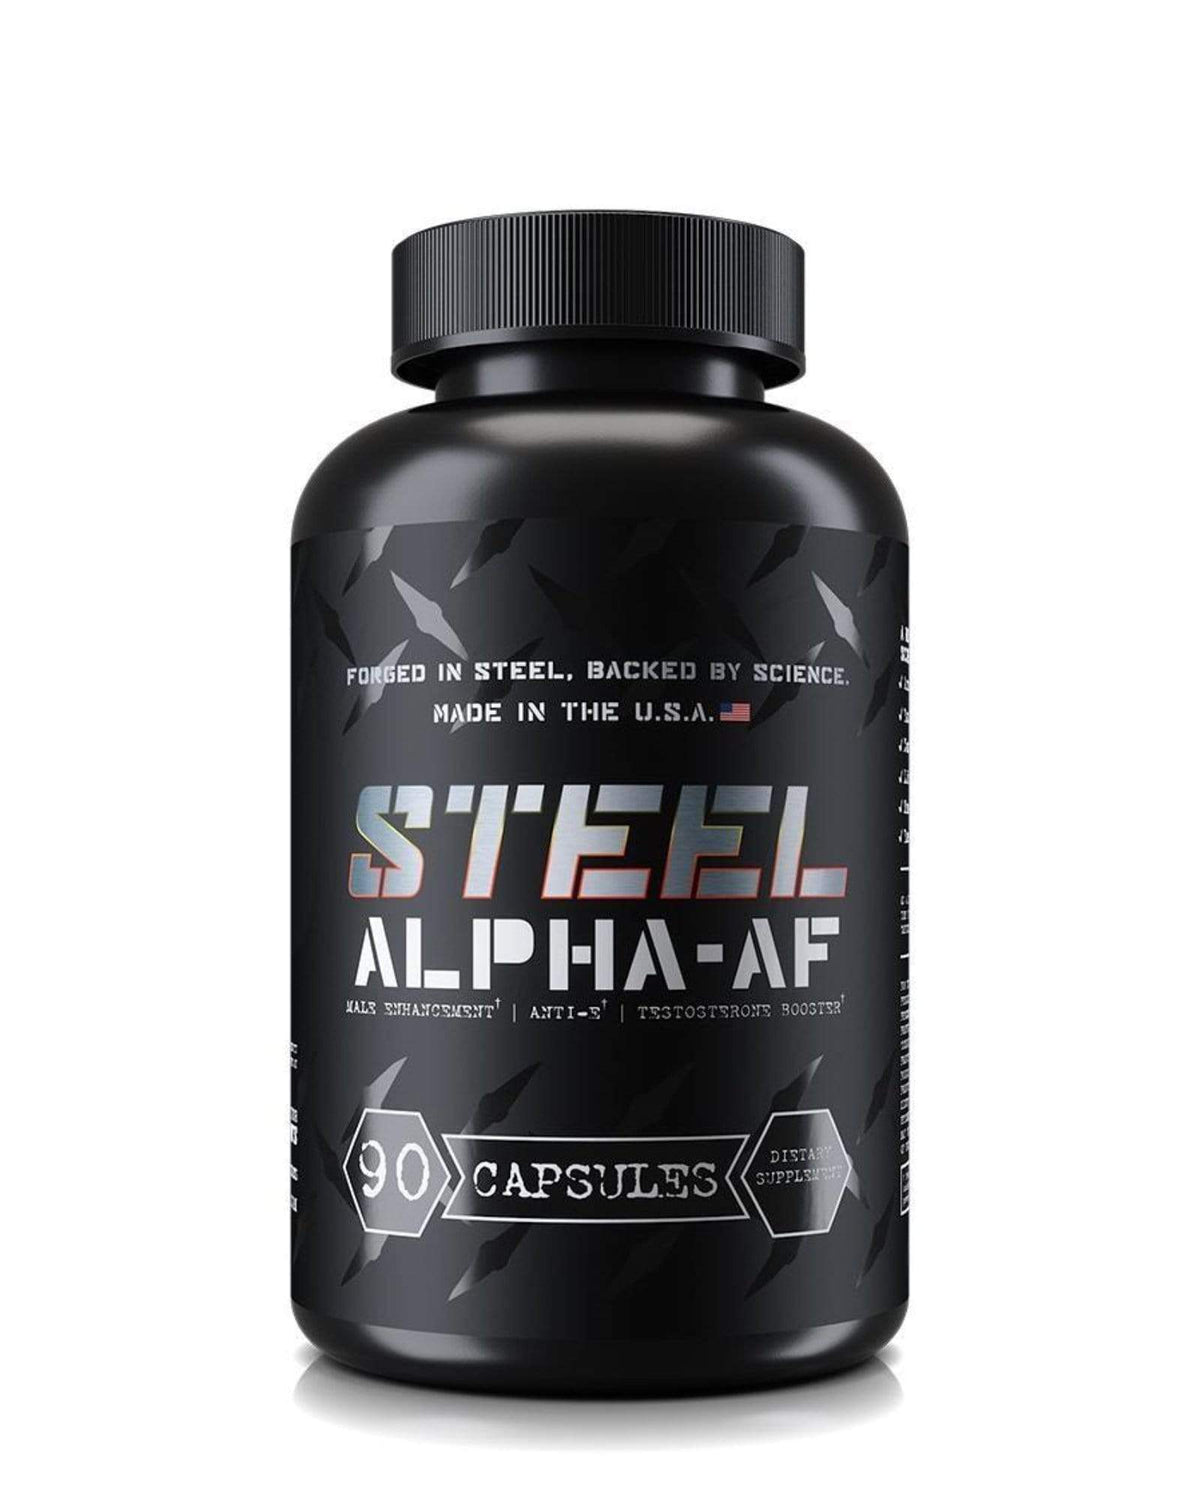 Steel Supplements Single ALPHA-AF